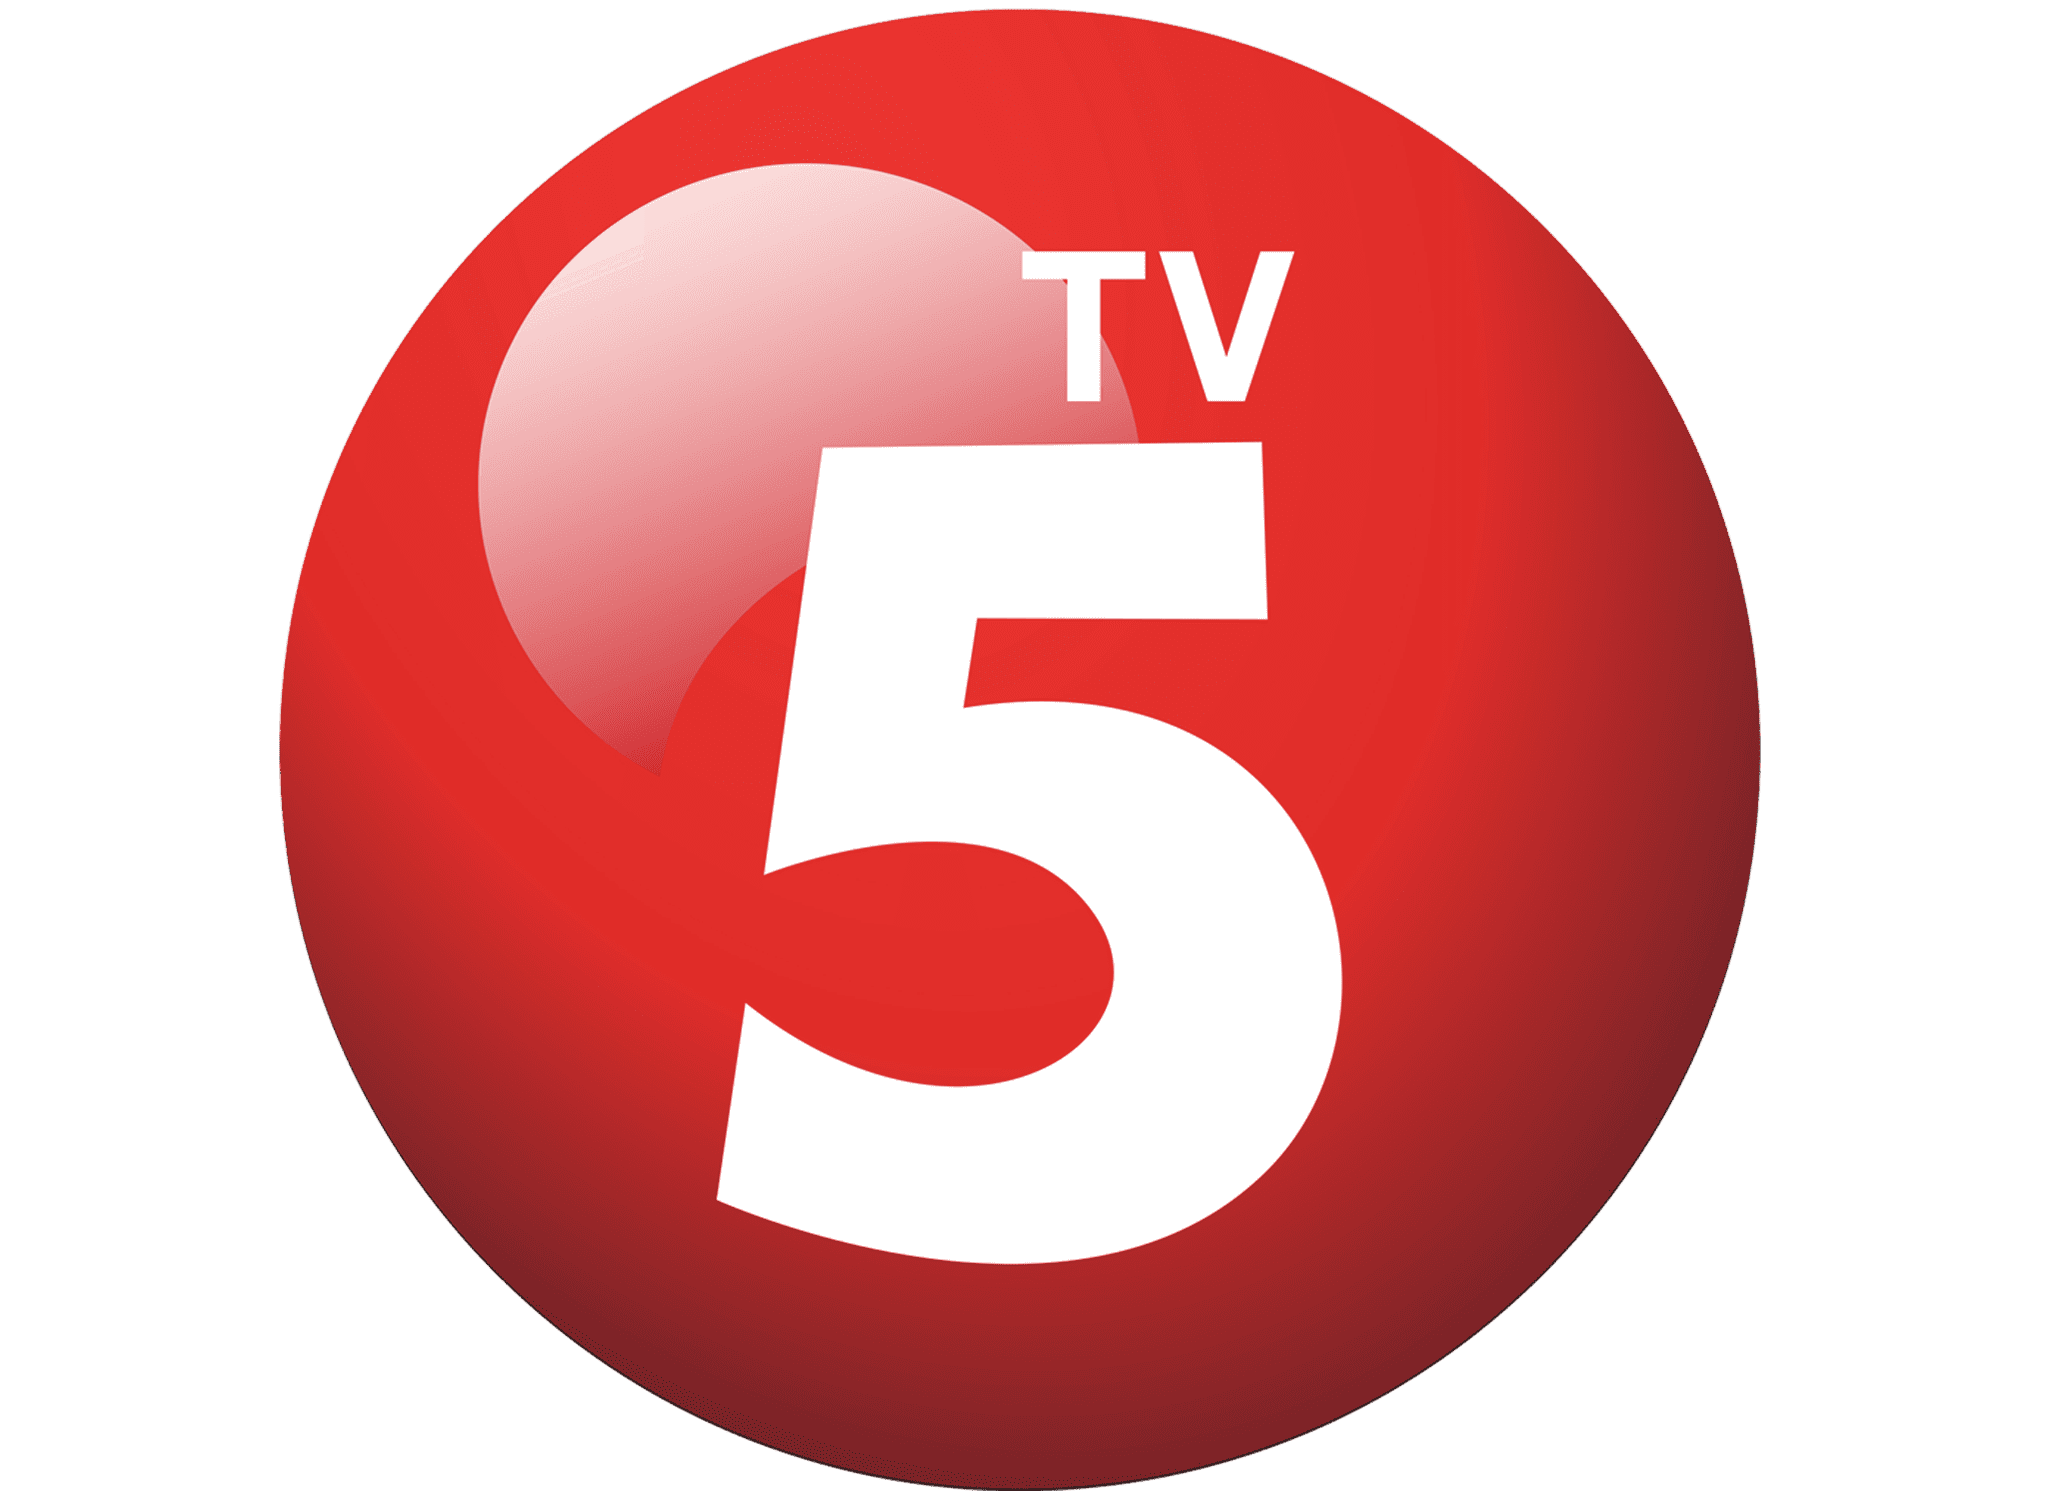 Пятерка тв. ТВ 5/7. Иконка 5 канал ICO. CGNL логотип. Tv5.